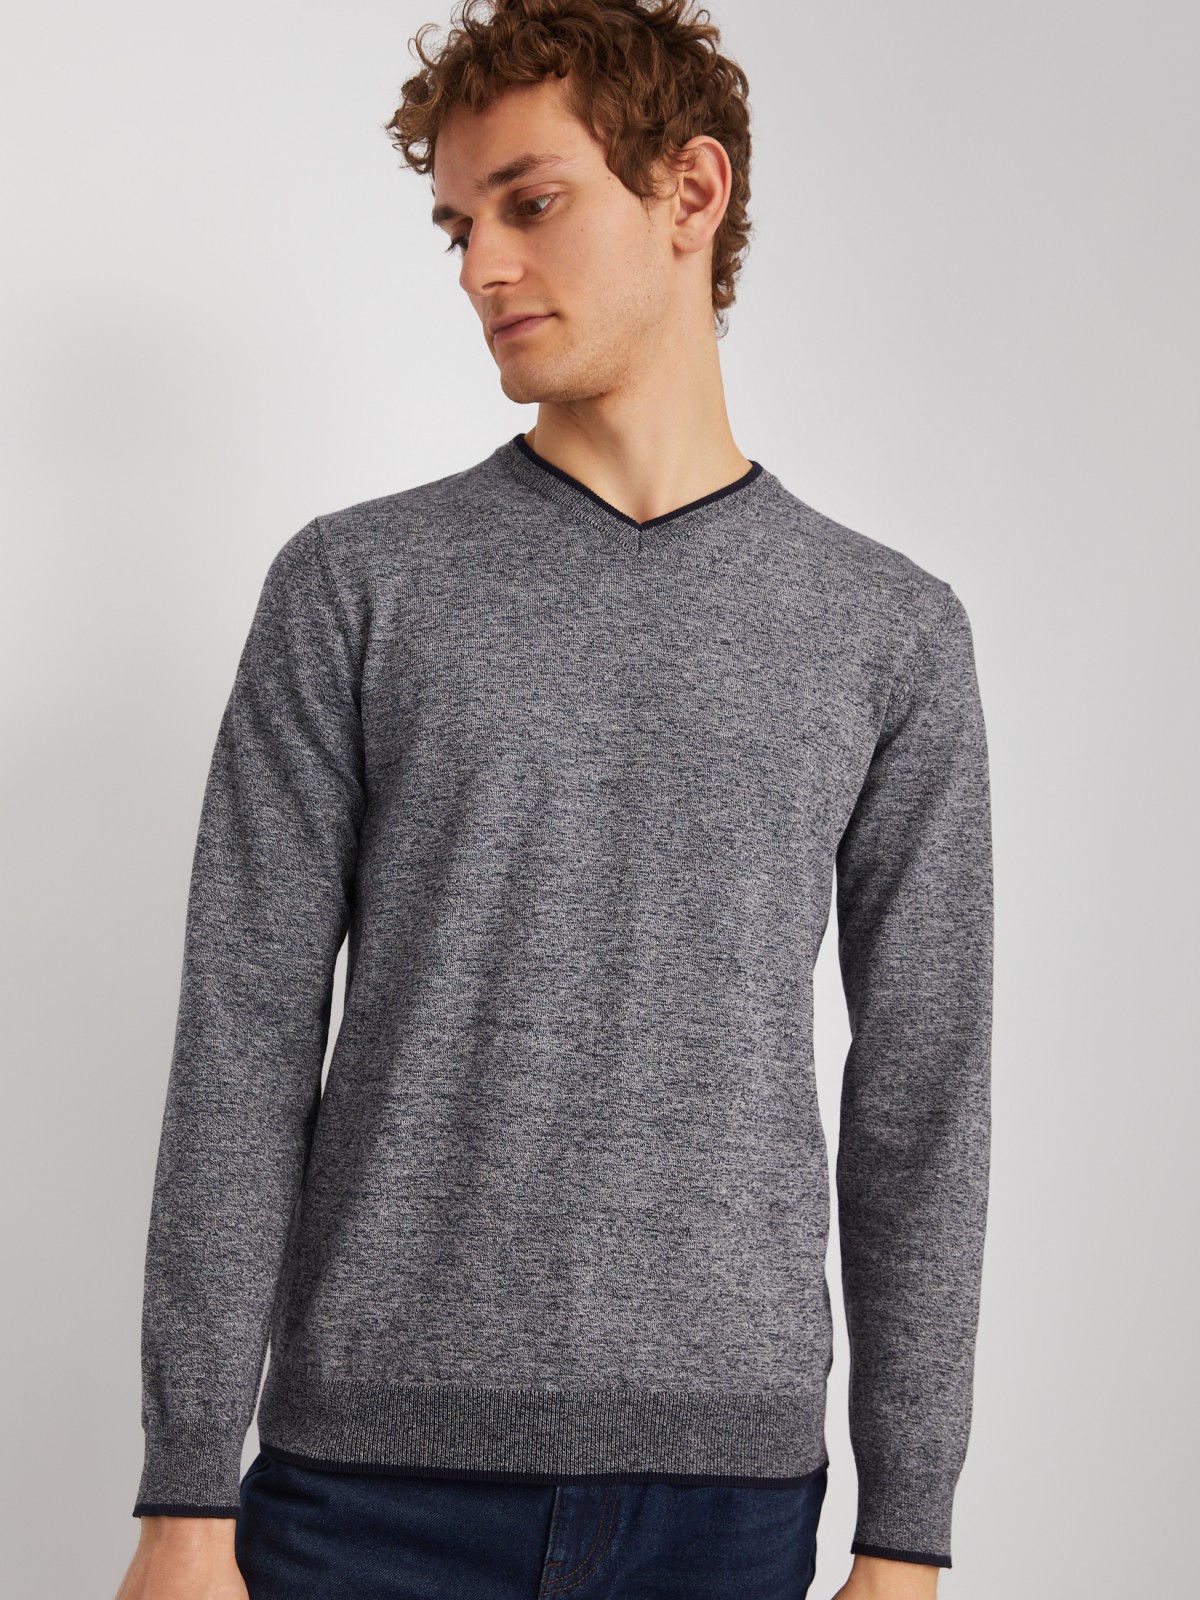 Тонкий трикотажный пуловер с длинным рукавом zolla 014116101082, цвет темно-серый, размер M - фото 4